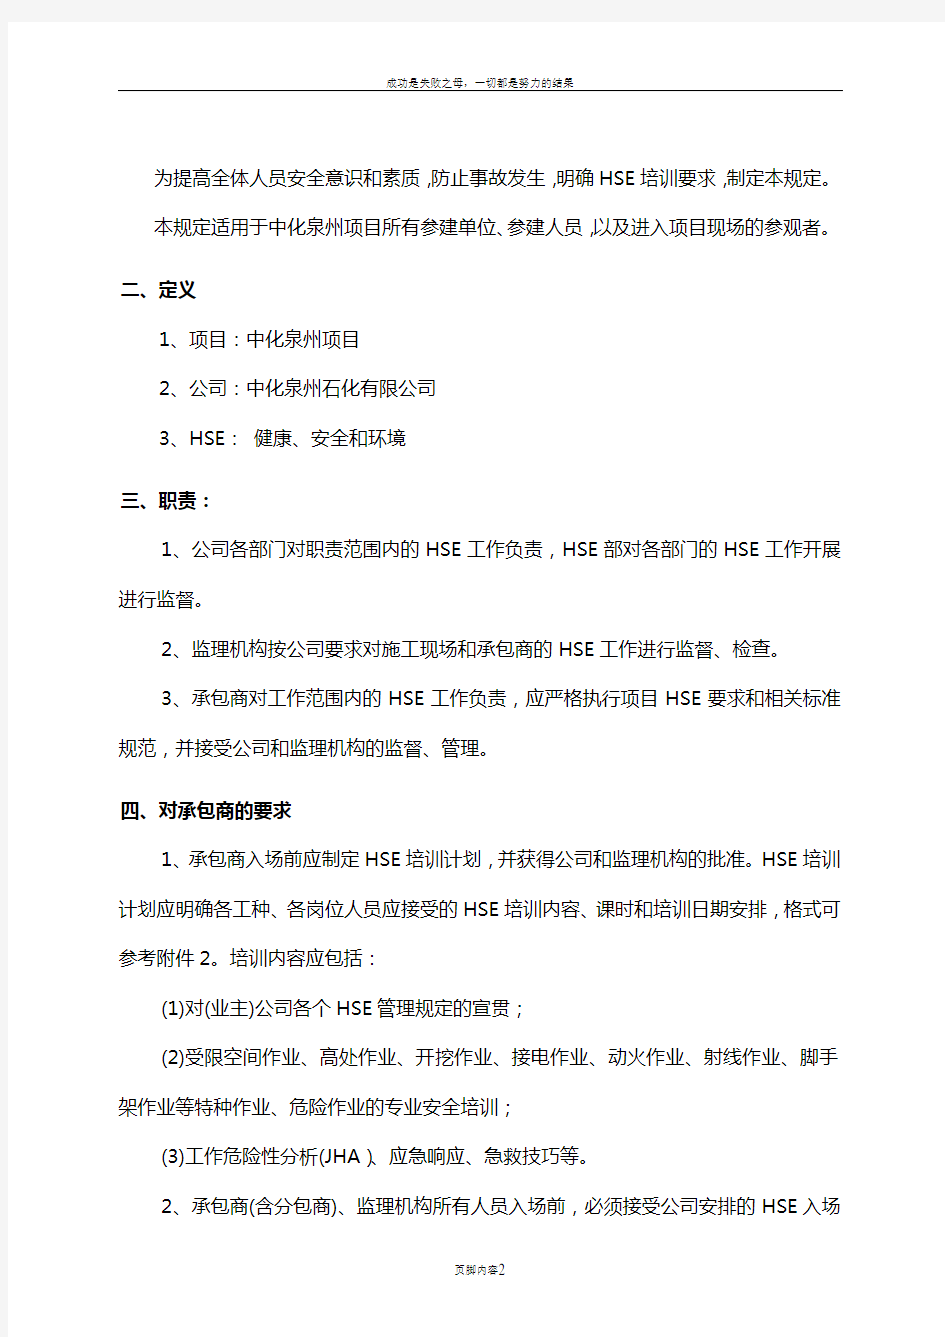 中化泉州石化有限公司项目管理手册-02-HSE培训管理规定